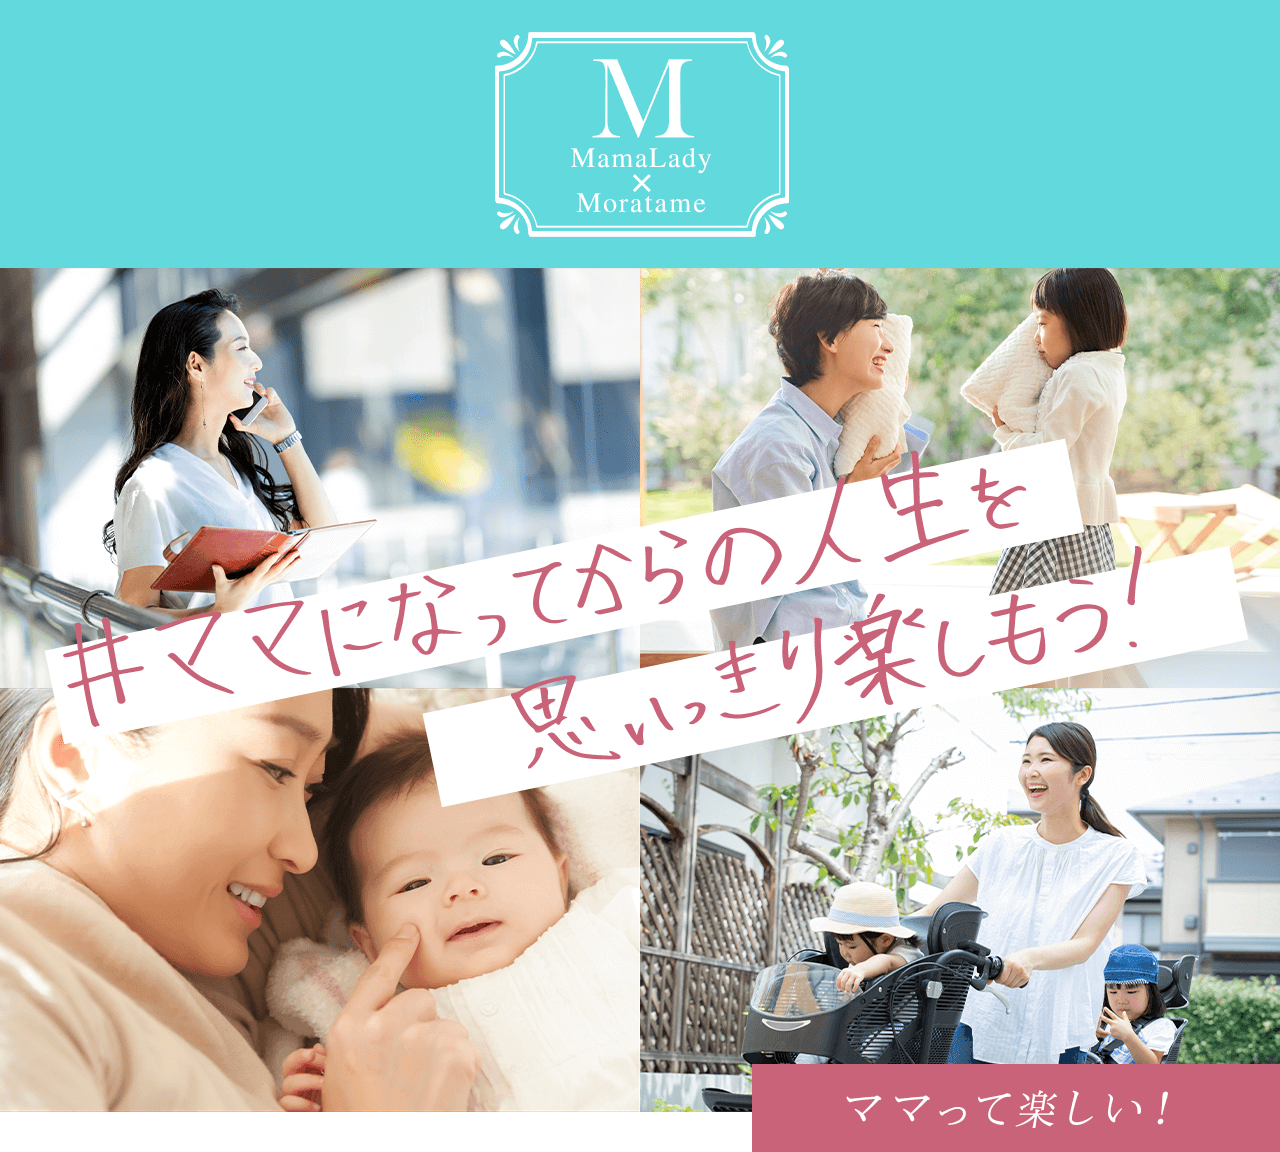 “MamaLady × Moratame #ママになってからの人生を思いっきり楽しもう！ママって楽しい！